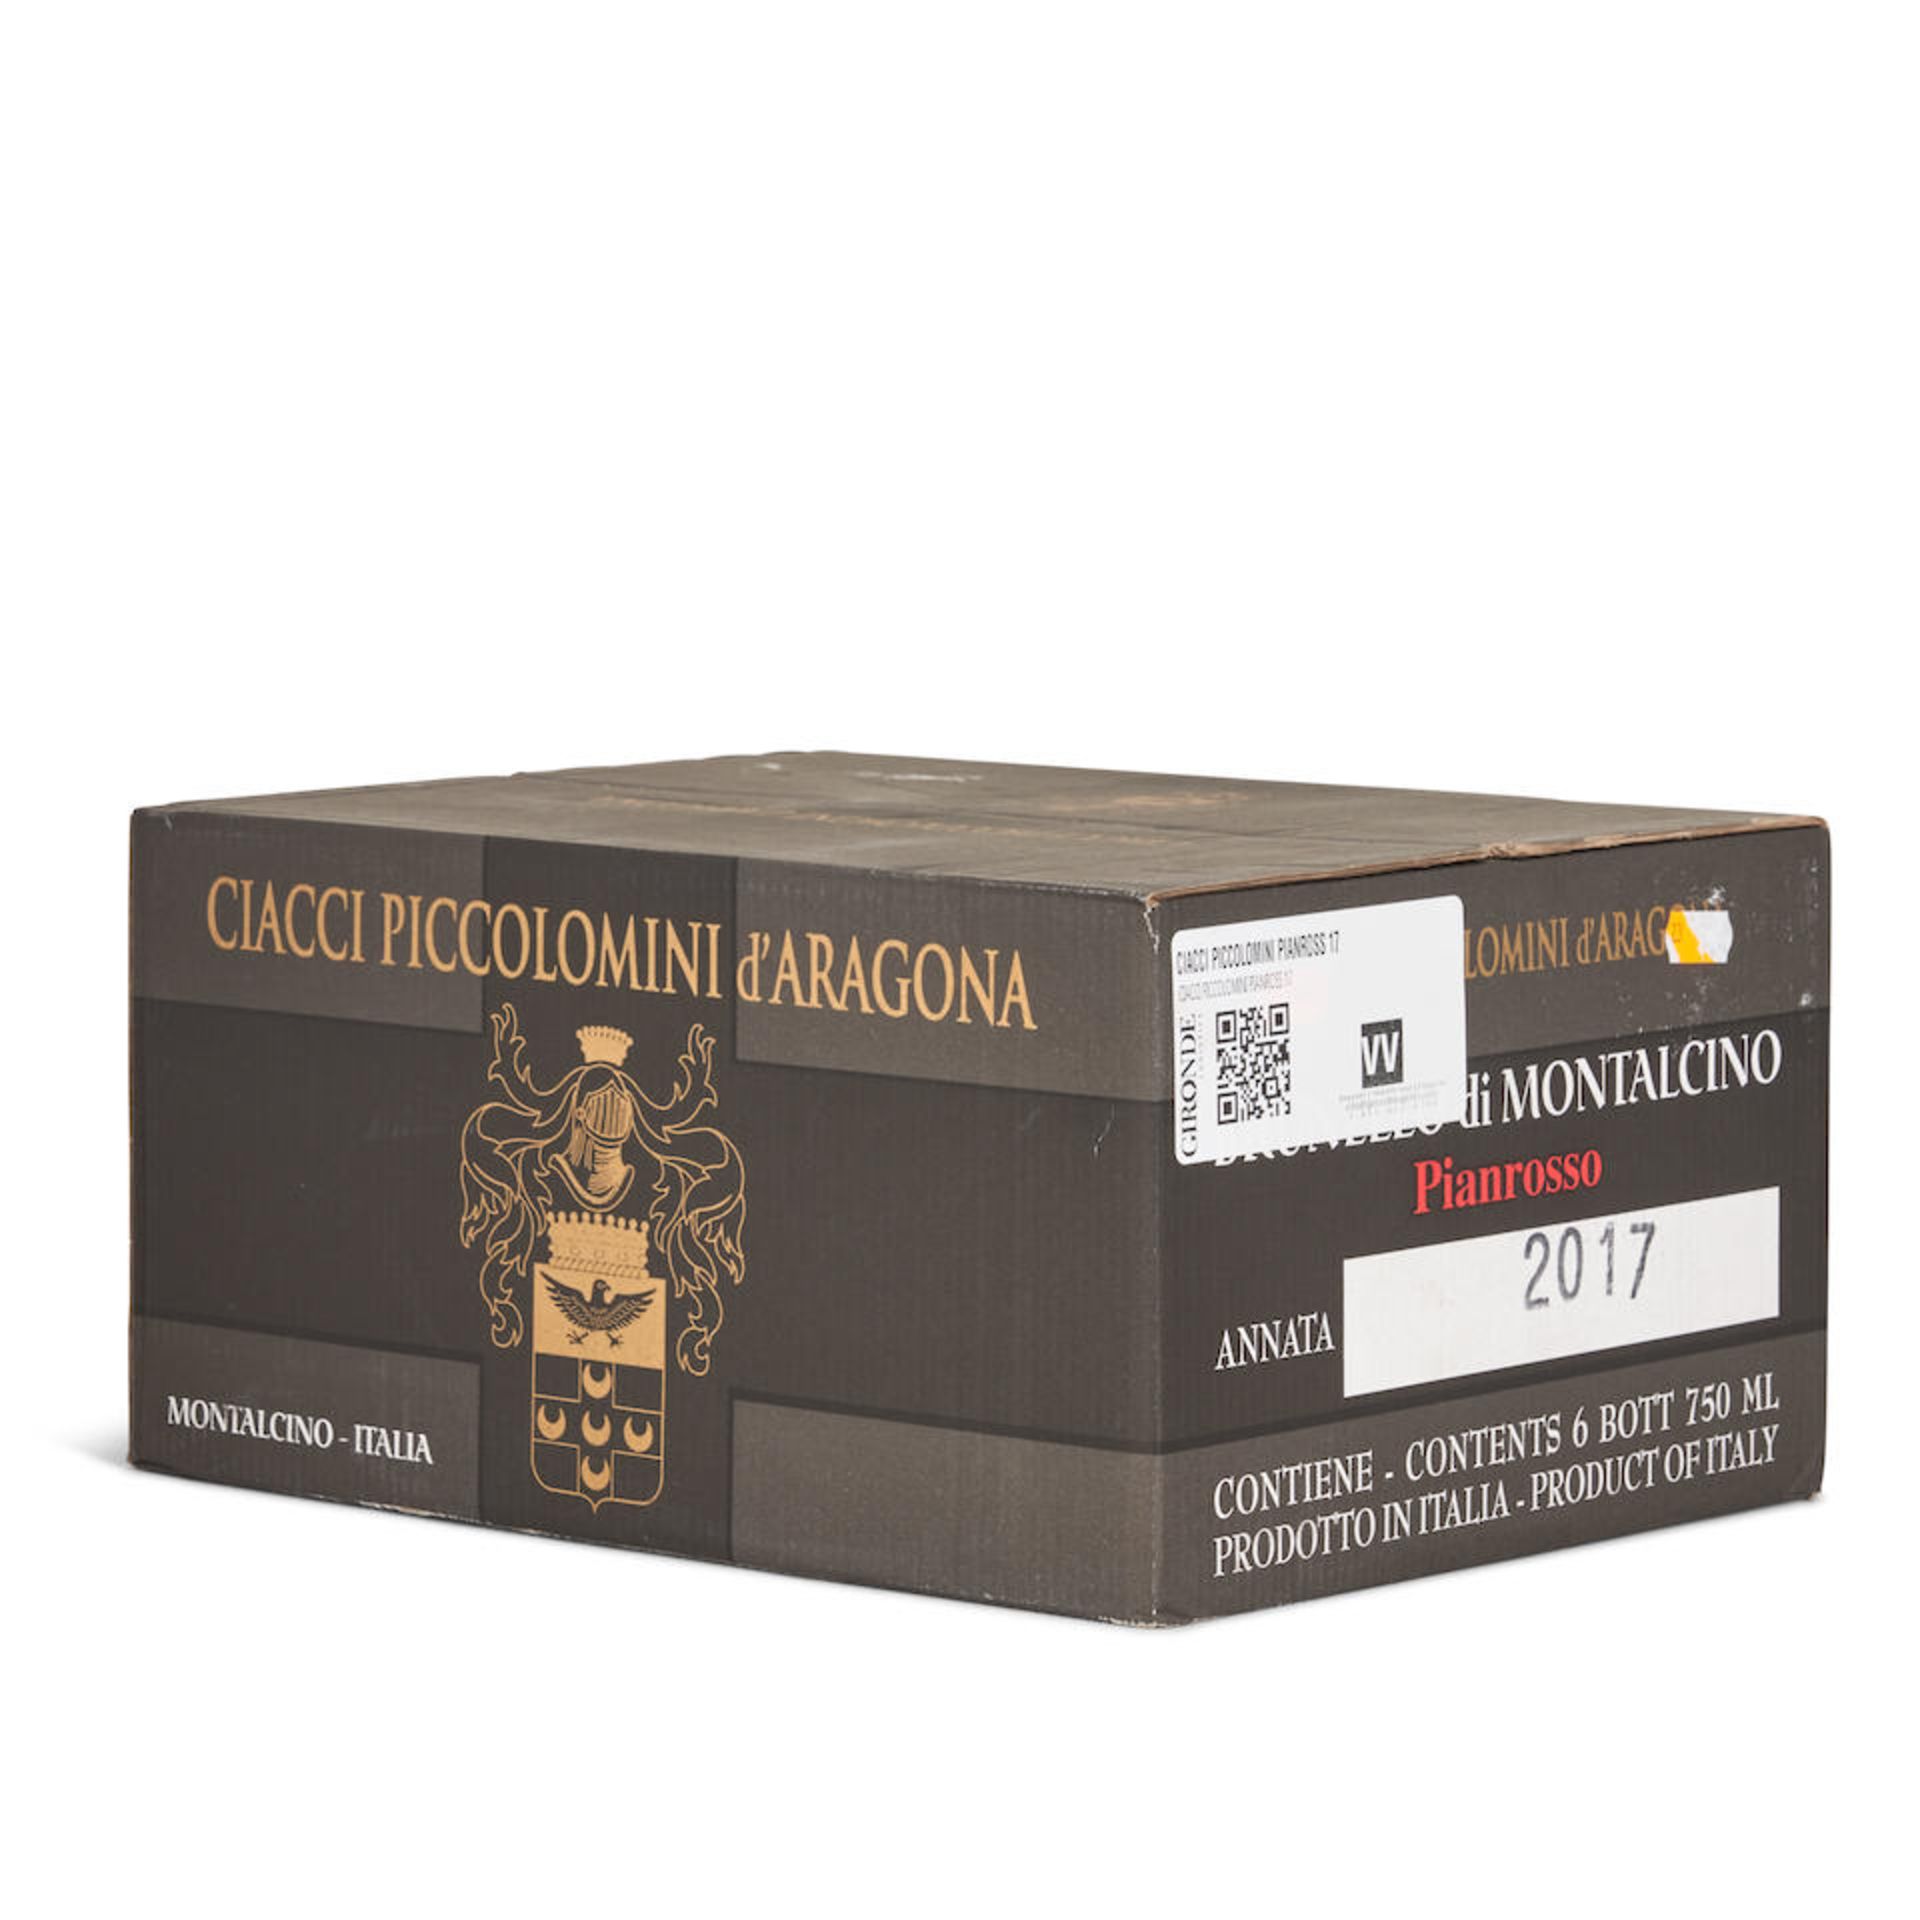 Ciacci Piccolomini d'Aragona Brunello di Montalcino Pianrosso 2017 (6 bottles)